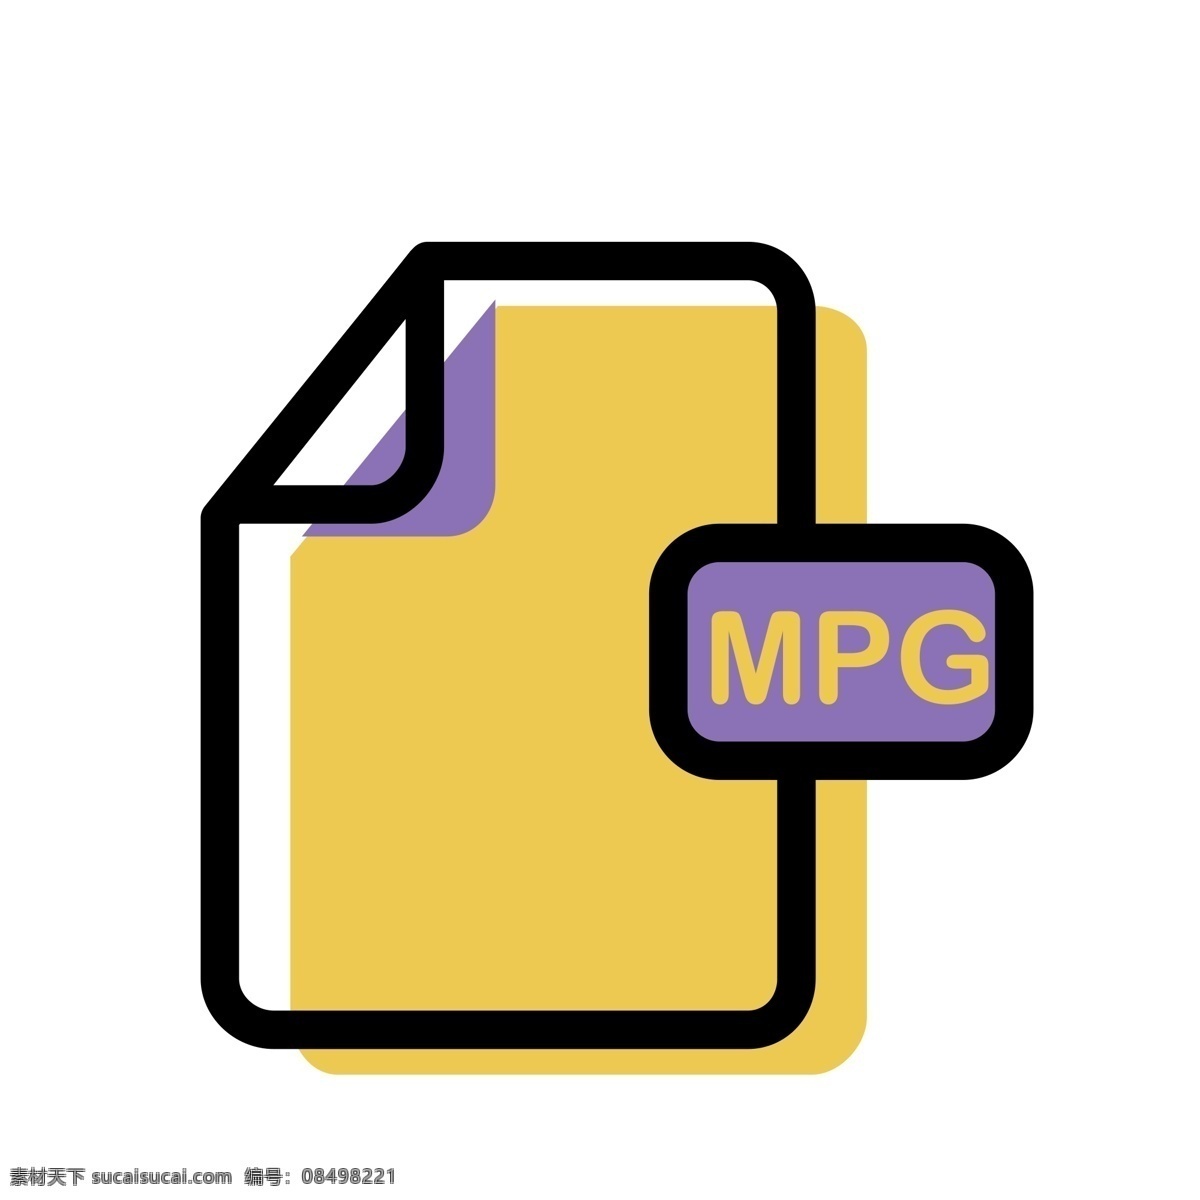 mpg 文件 格式 图标 免 抠 图 软件 格式文件 ui应用图标 电脑文件图标 软件图标 卡通图案 卡通插画 免抠图